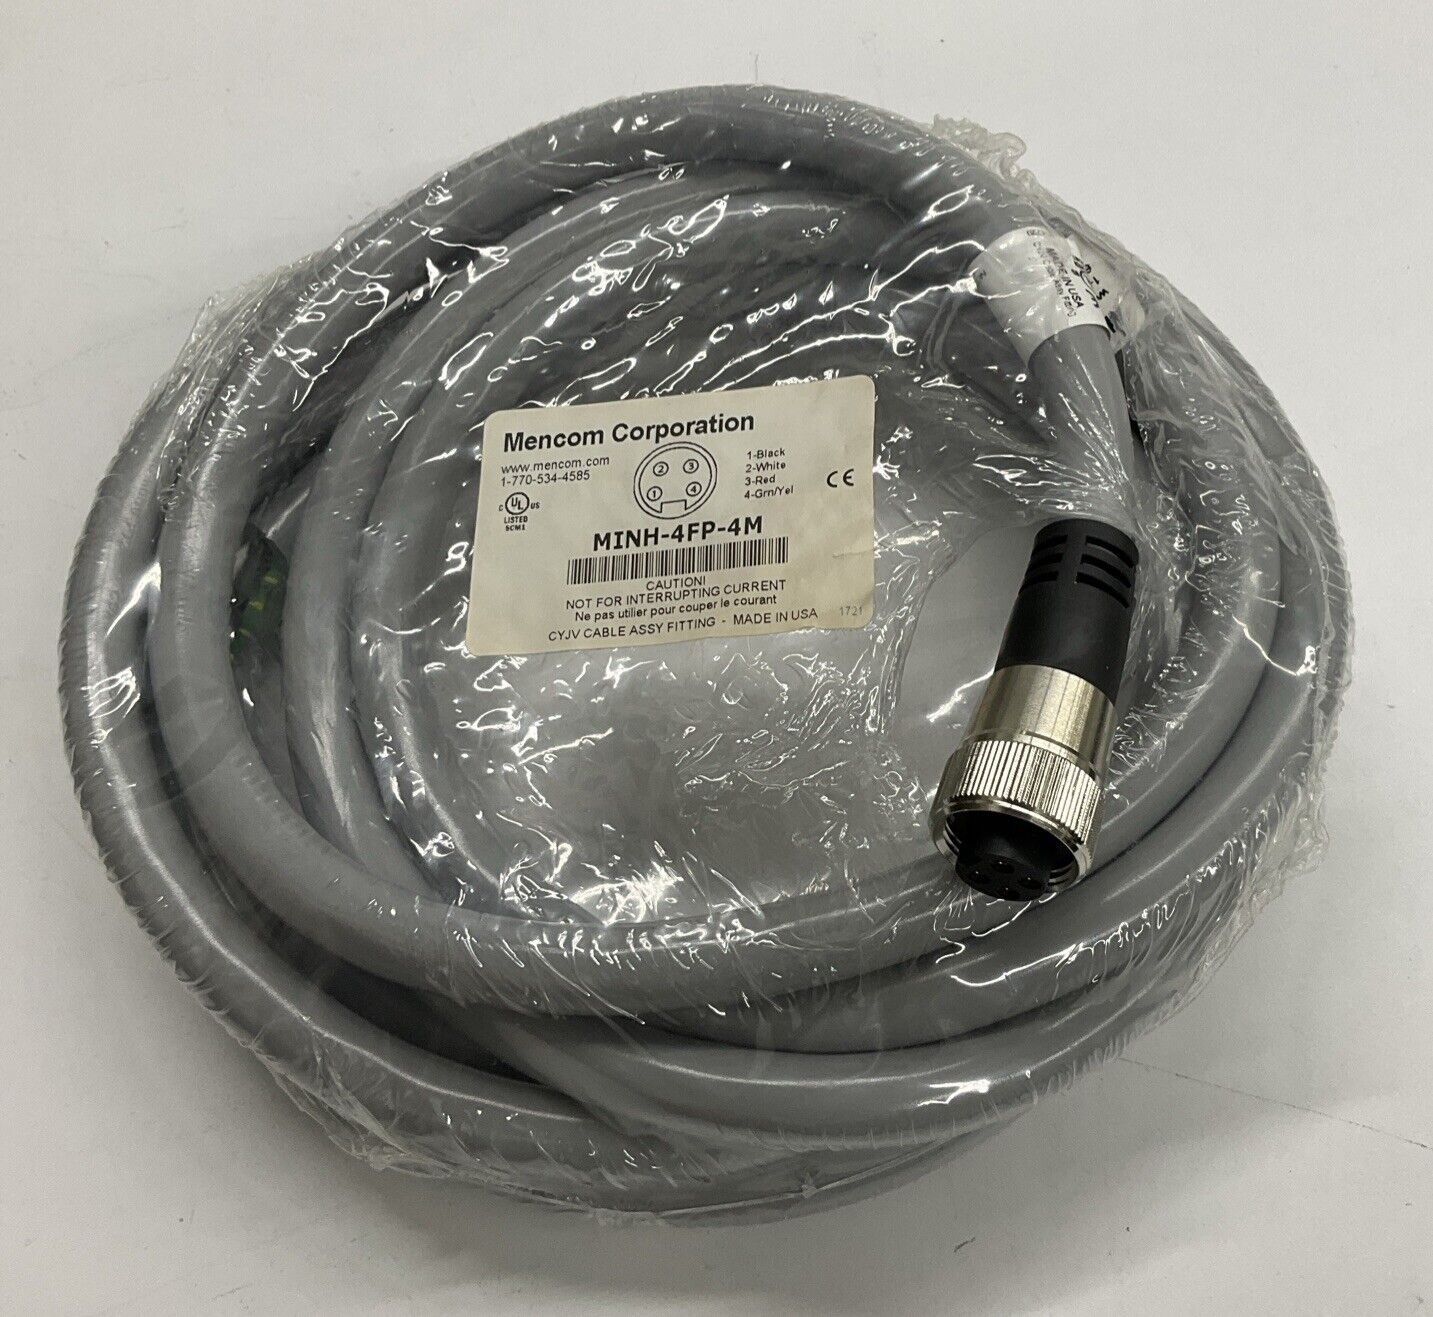 Mencom MINH-4FP-4M 7/8" Mini, Female, 4-Pole, 4-Meter Cable (CBL 117)